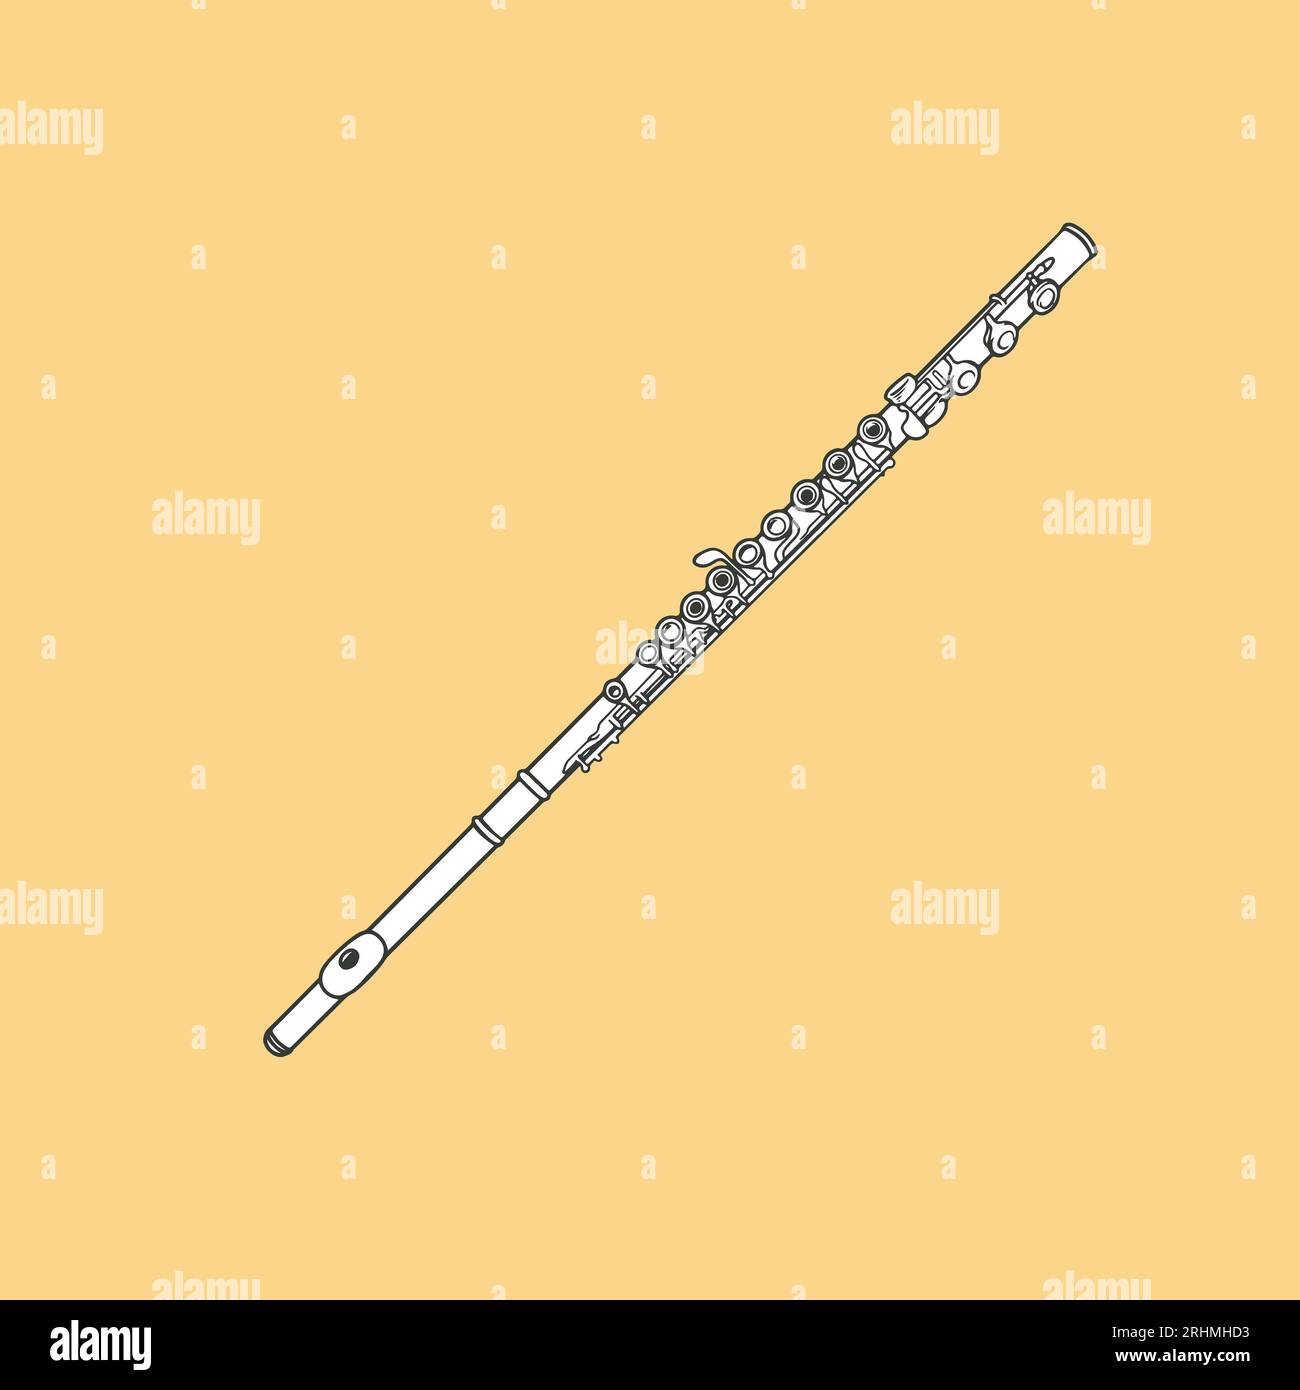 Handgezeichnete Flöteninstrument-Doodle-Vektor-Illustration in Schwarz und weiß Stock Vektor